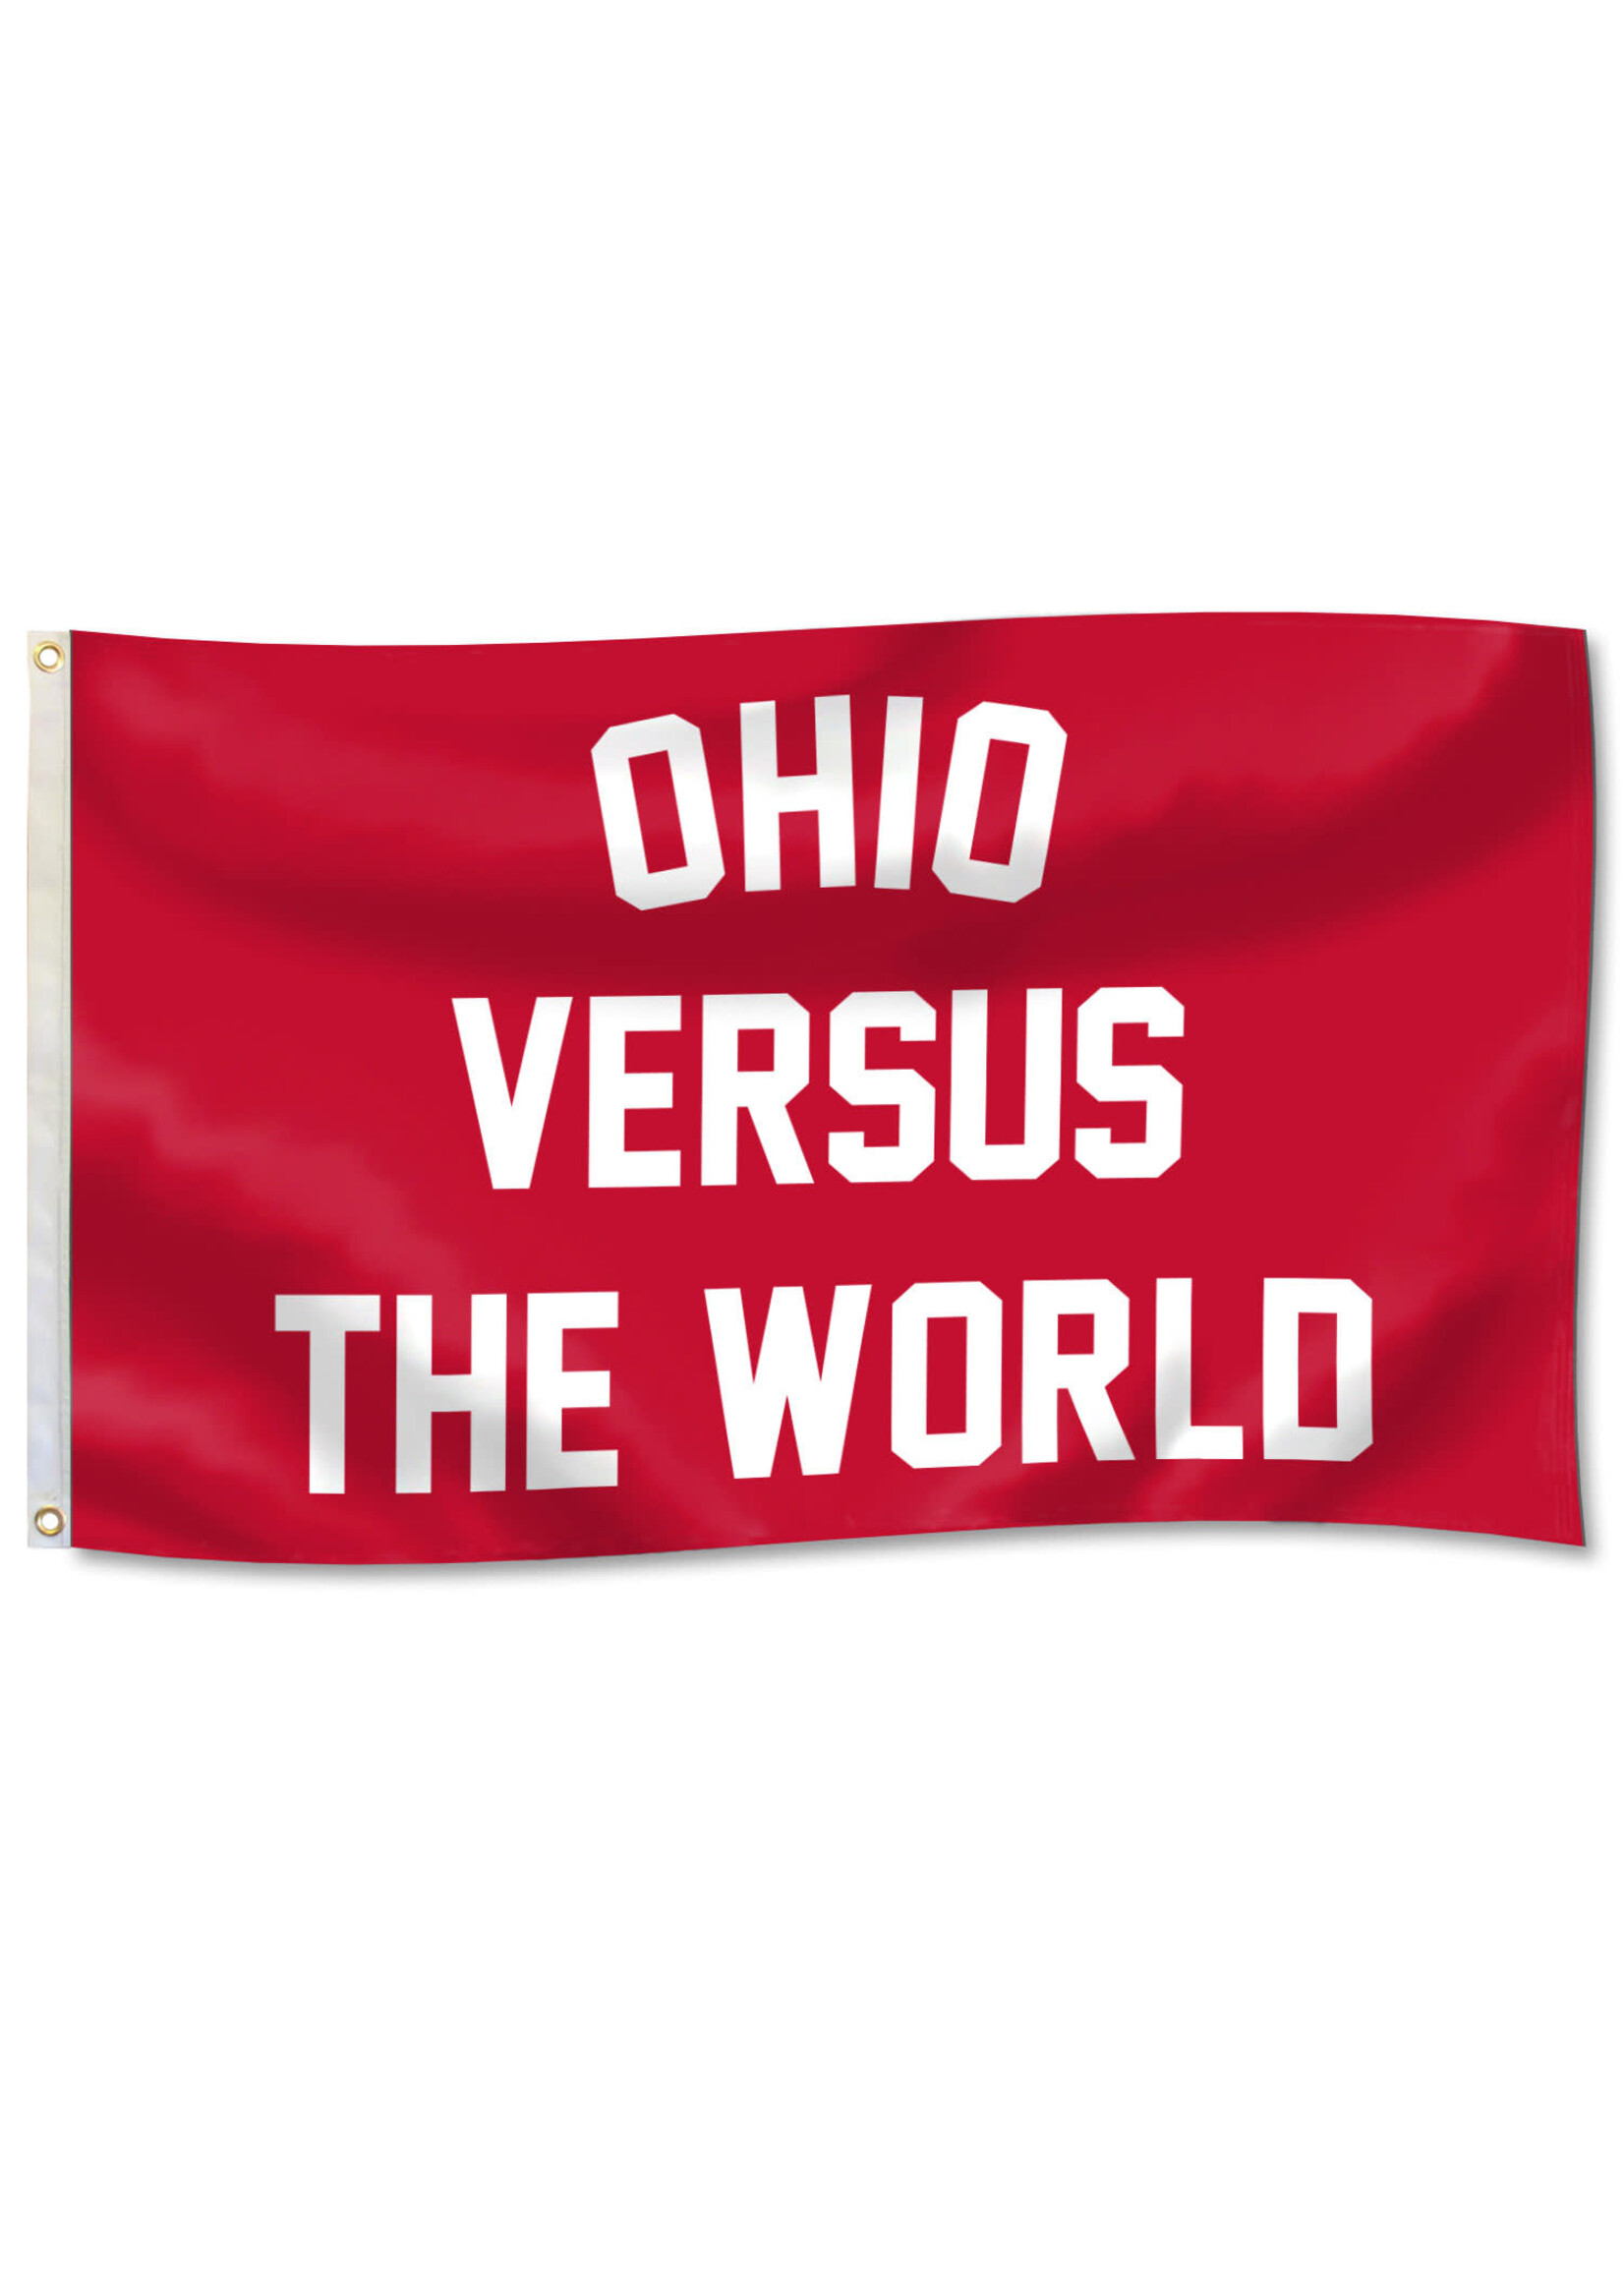 Ohio Versus The World 3x5 Flag